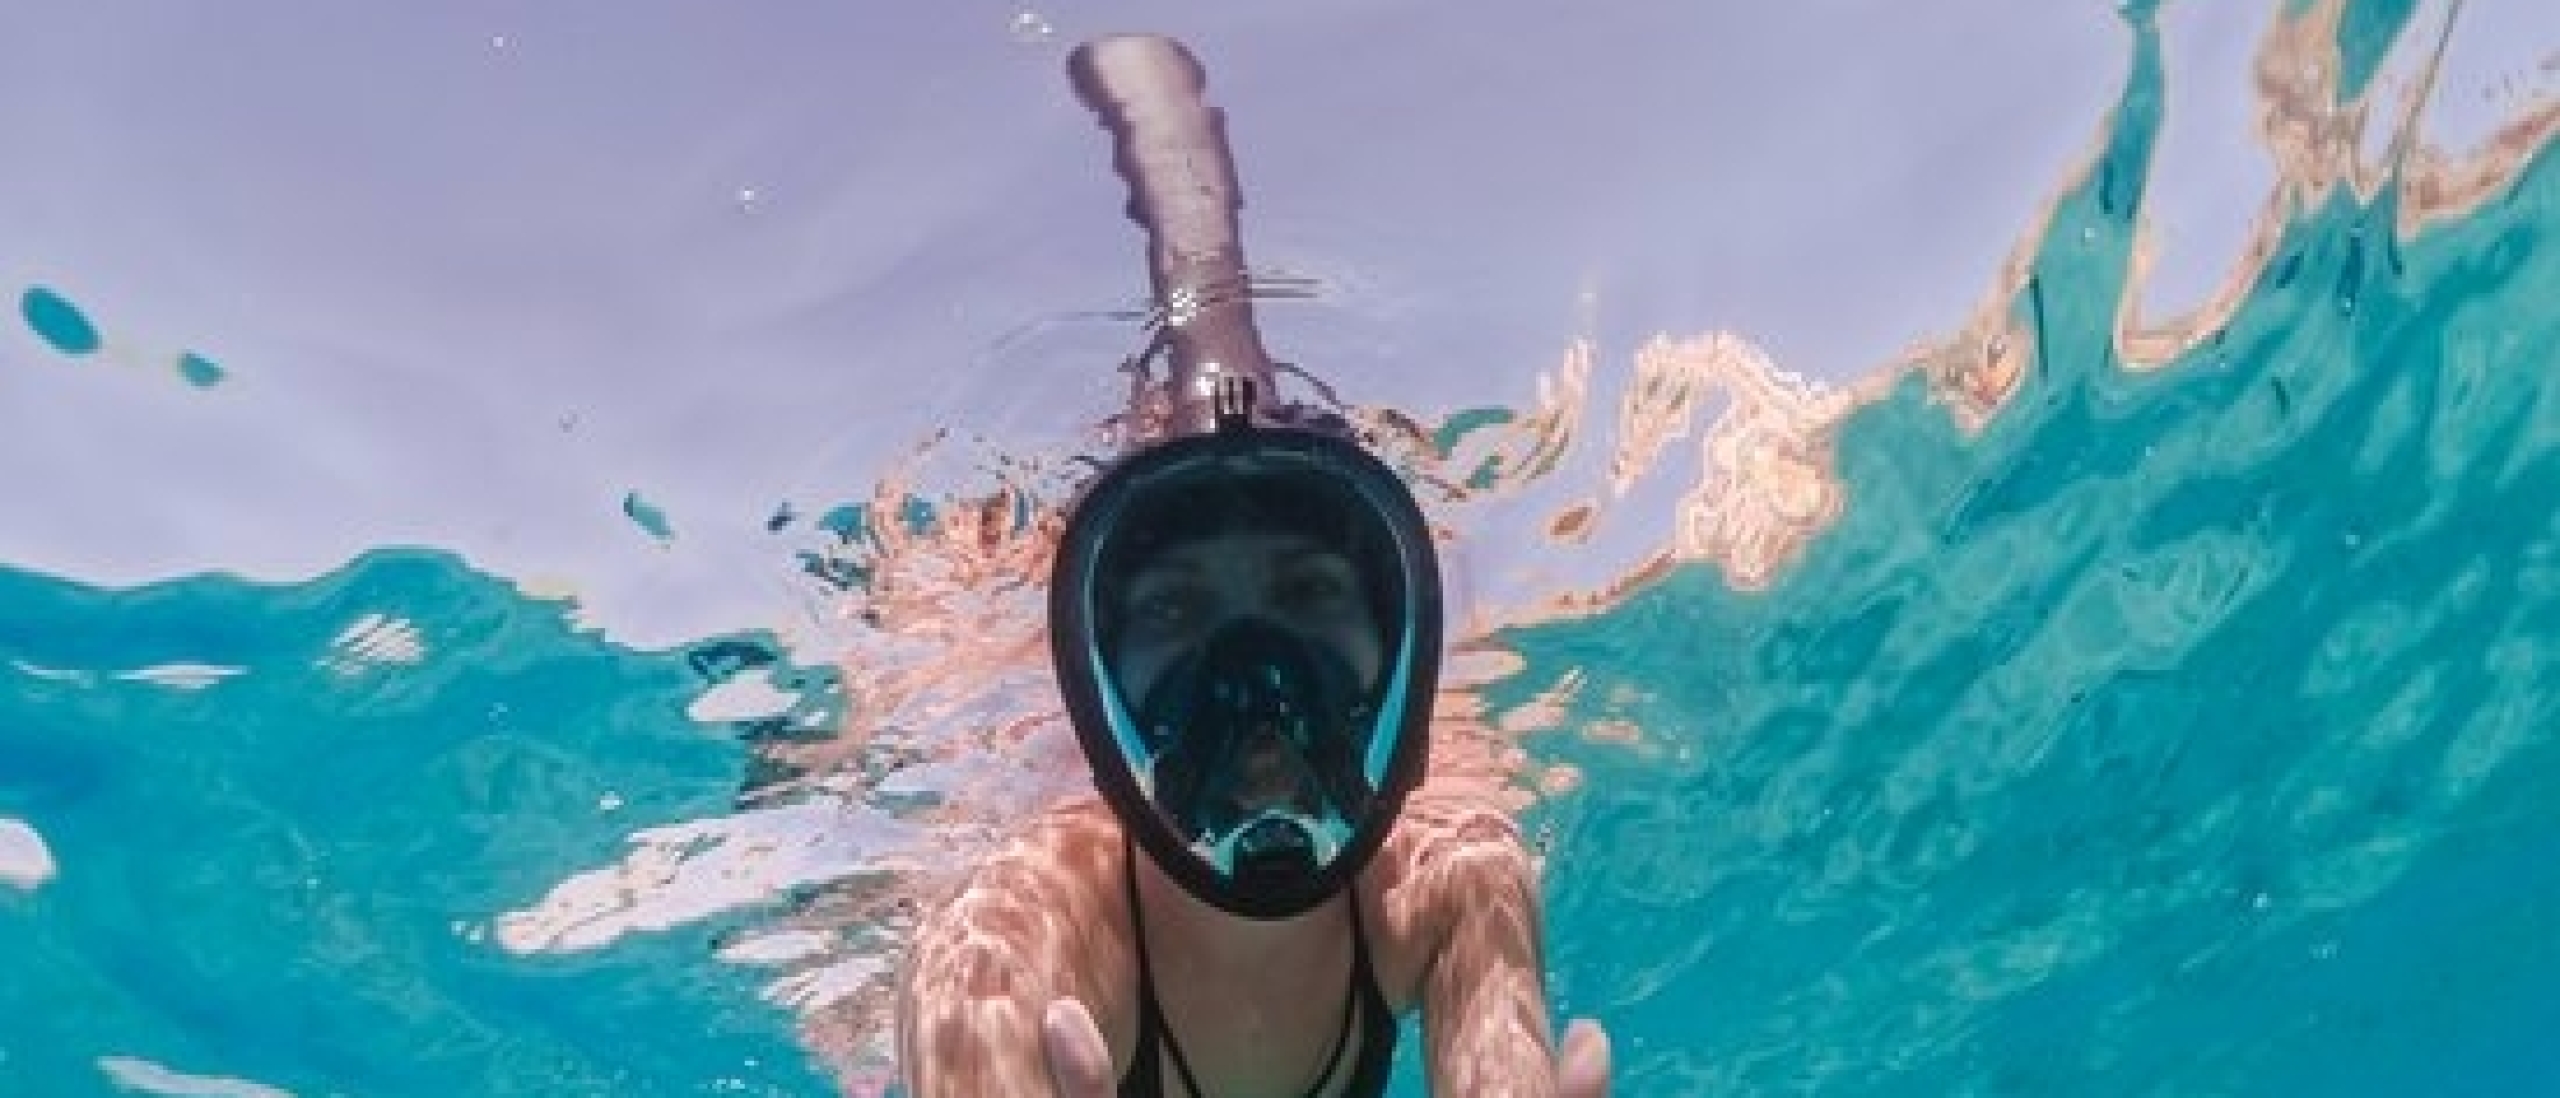 Beste snorkelmasker kopen? Top 5 - Hoe kies je een snorkelmasker?